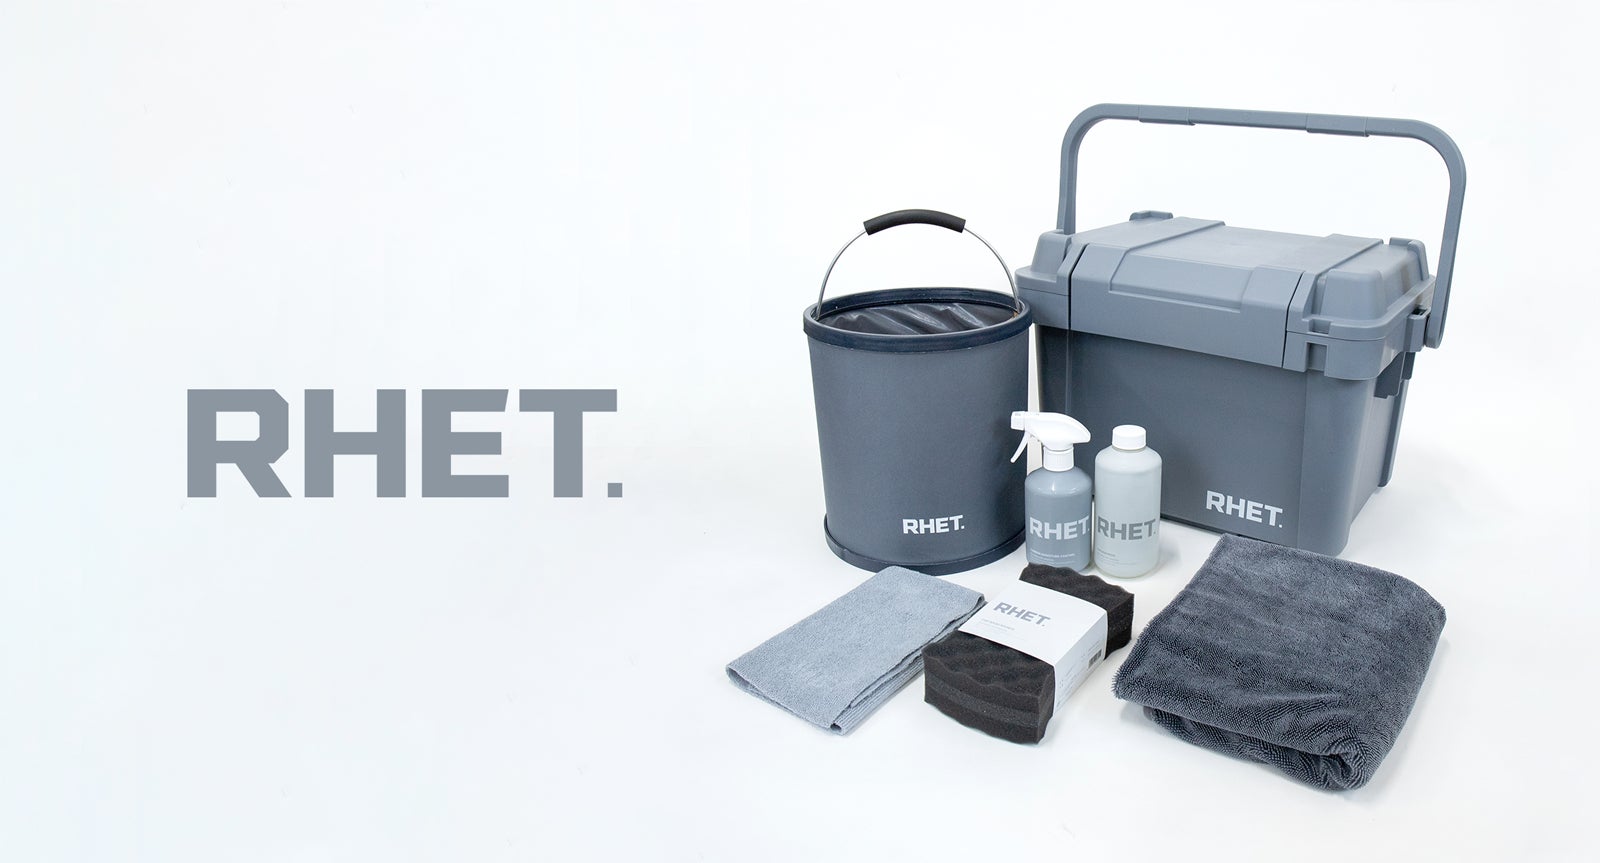 カーケアブランド『RHET.』の第三弾製品4点を含むセット商品の一般発売を開始